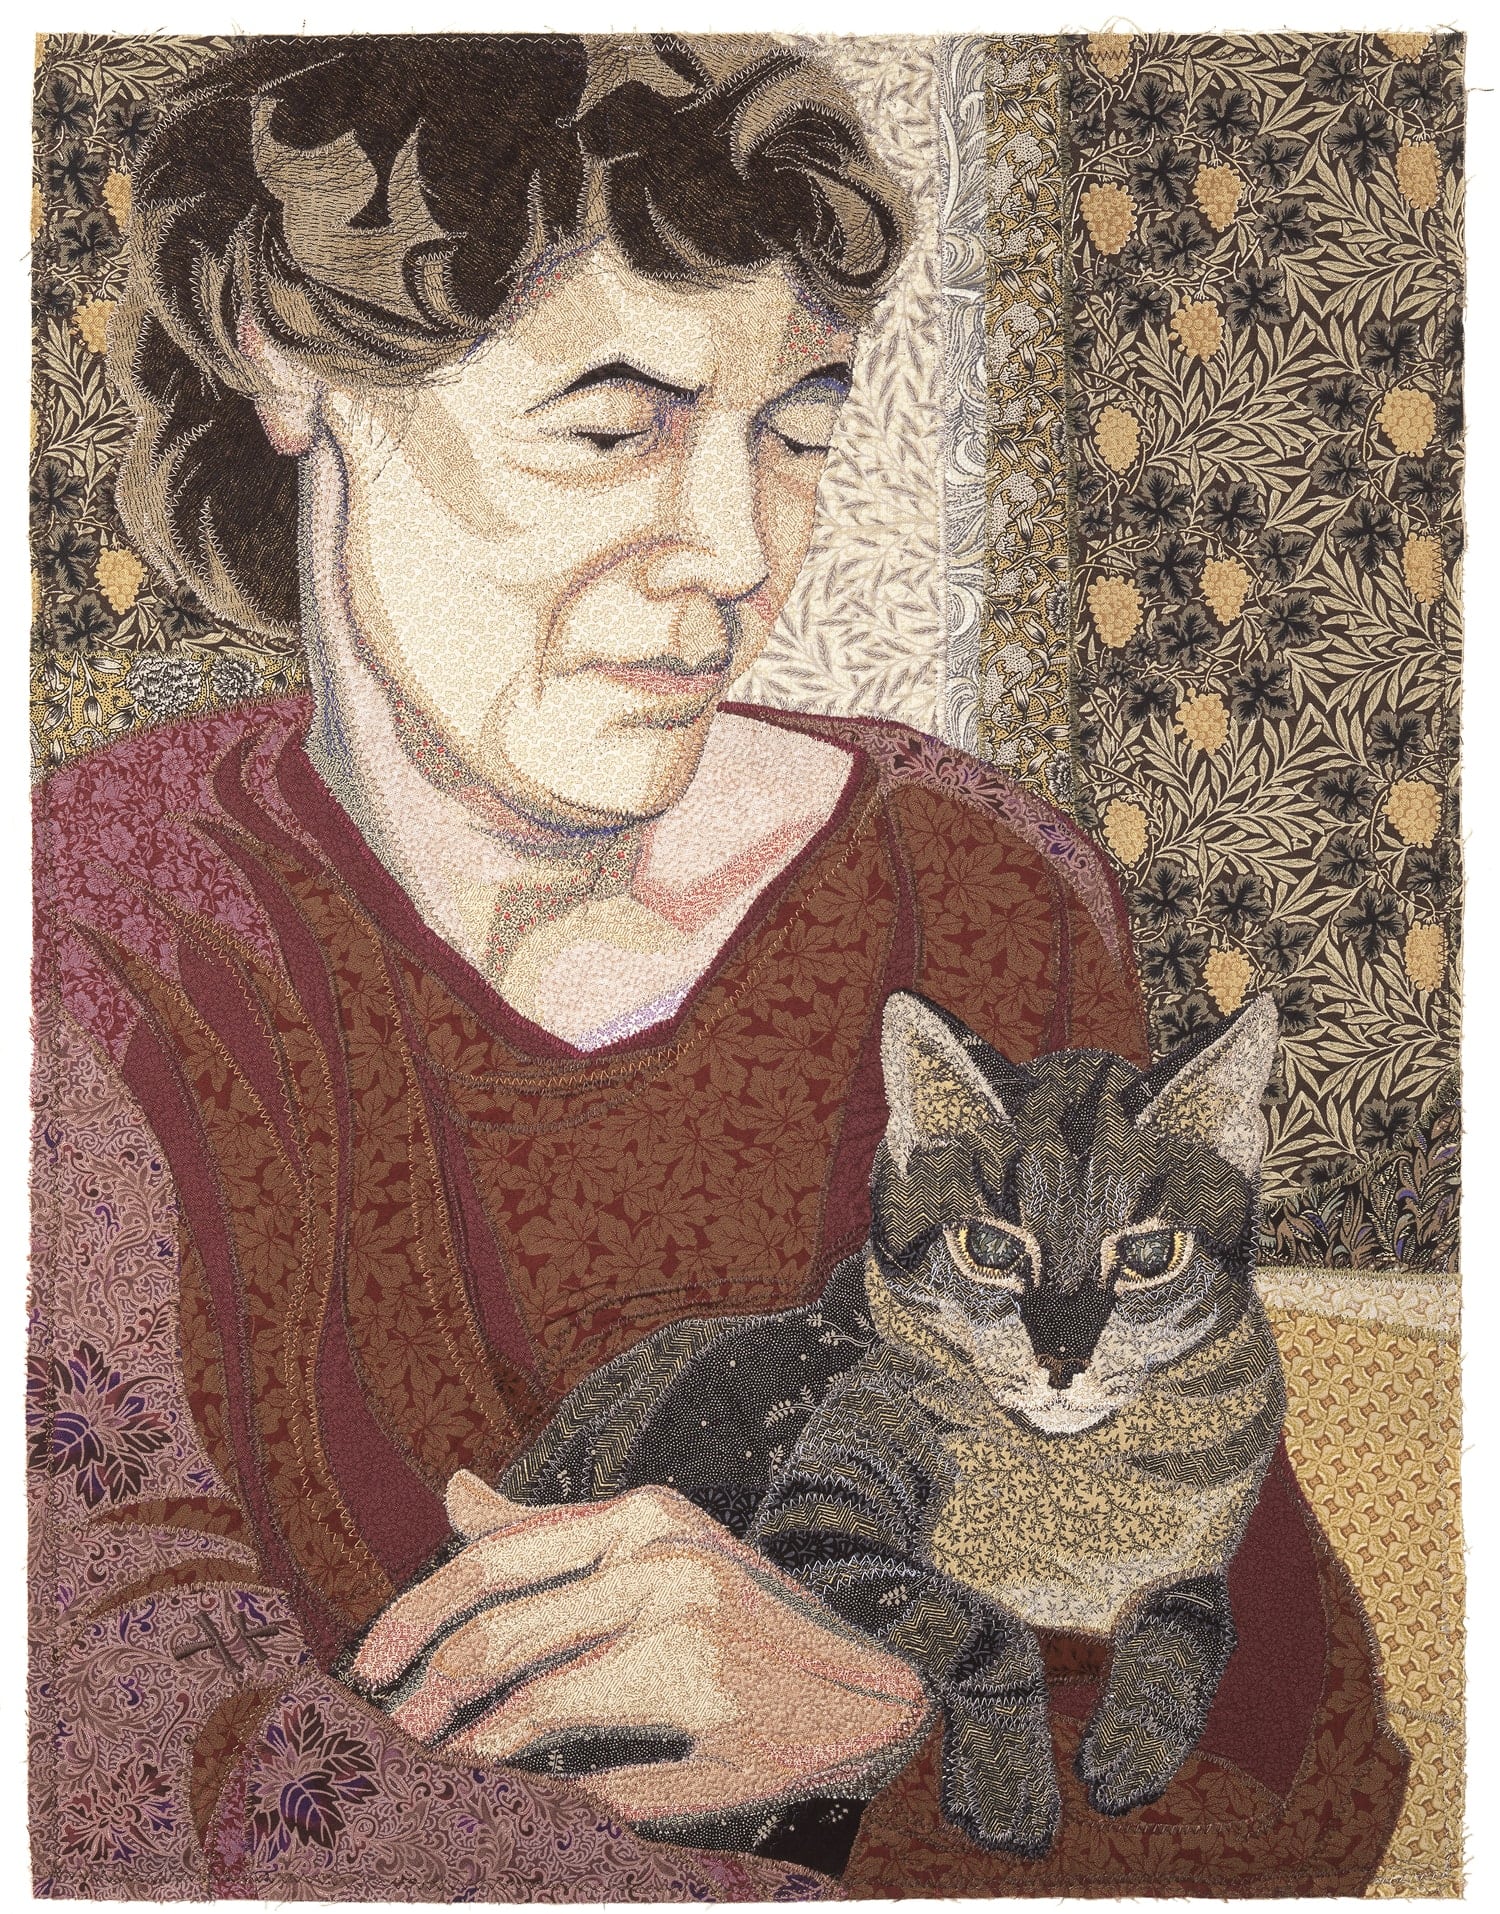 Woman and Cat - Deidre Scherer